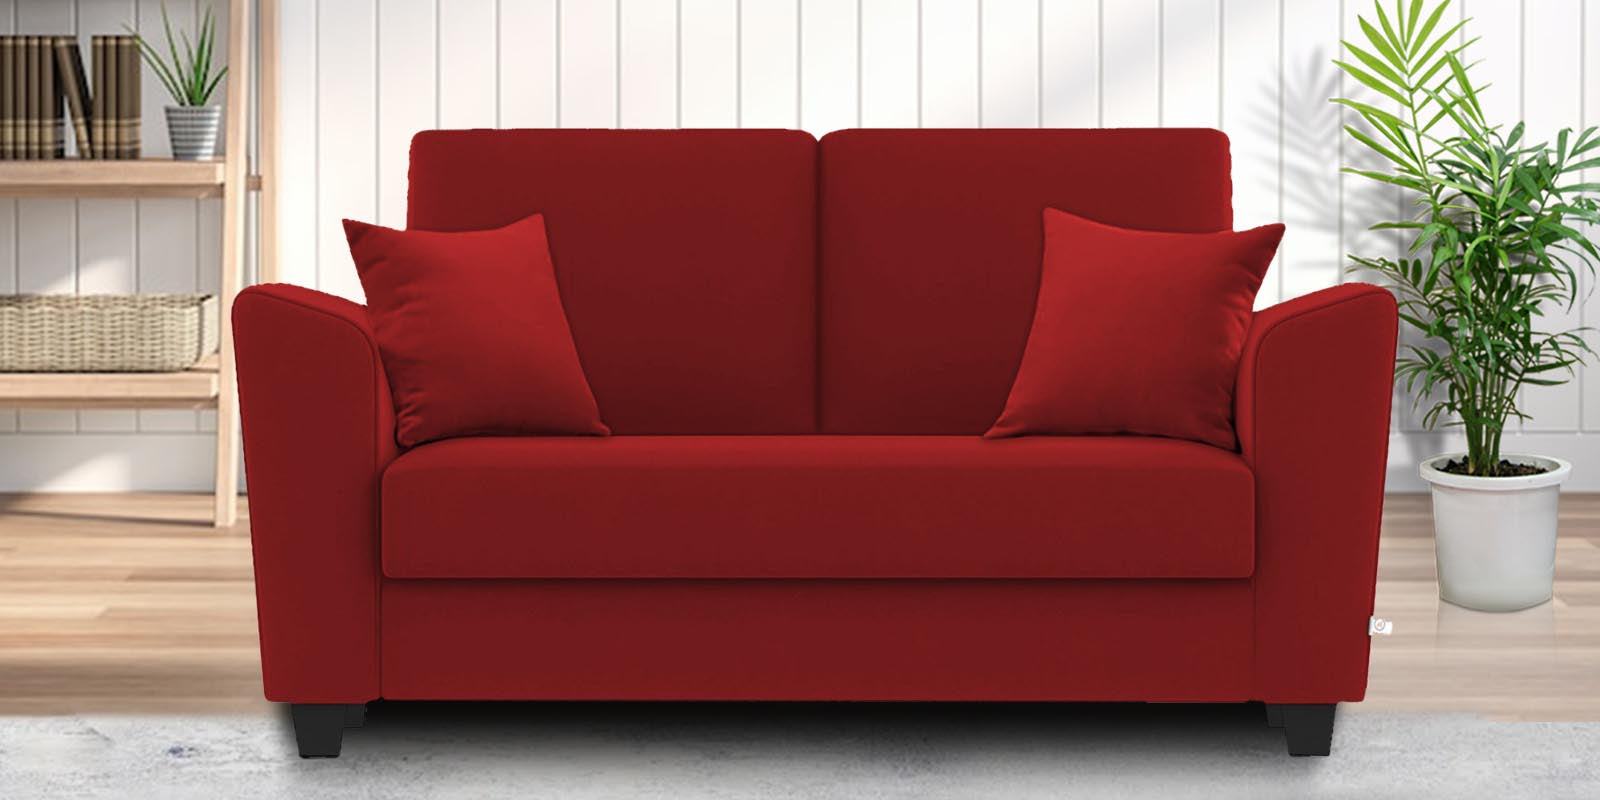 Daku Fabric 2 Seater Sofa in Blood Maroon Colour